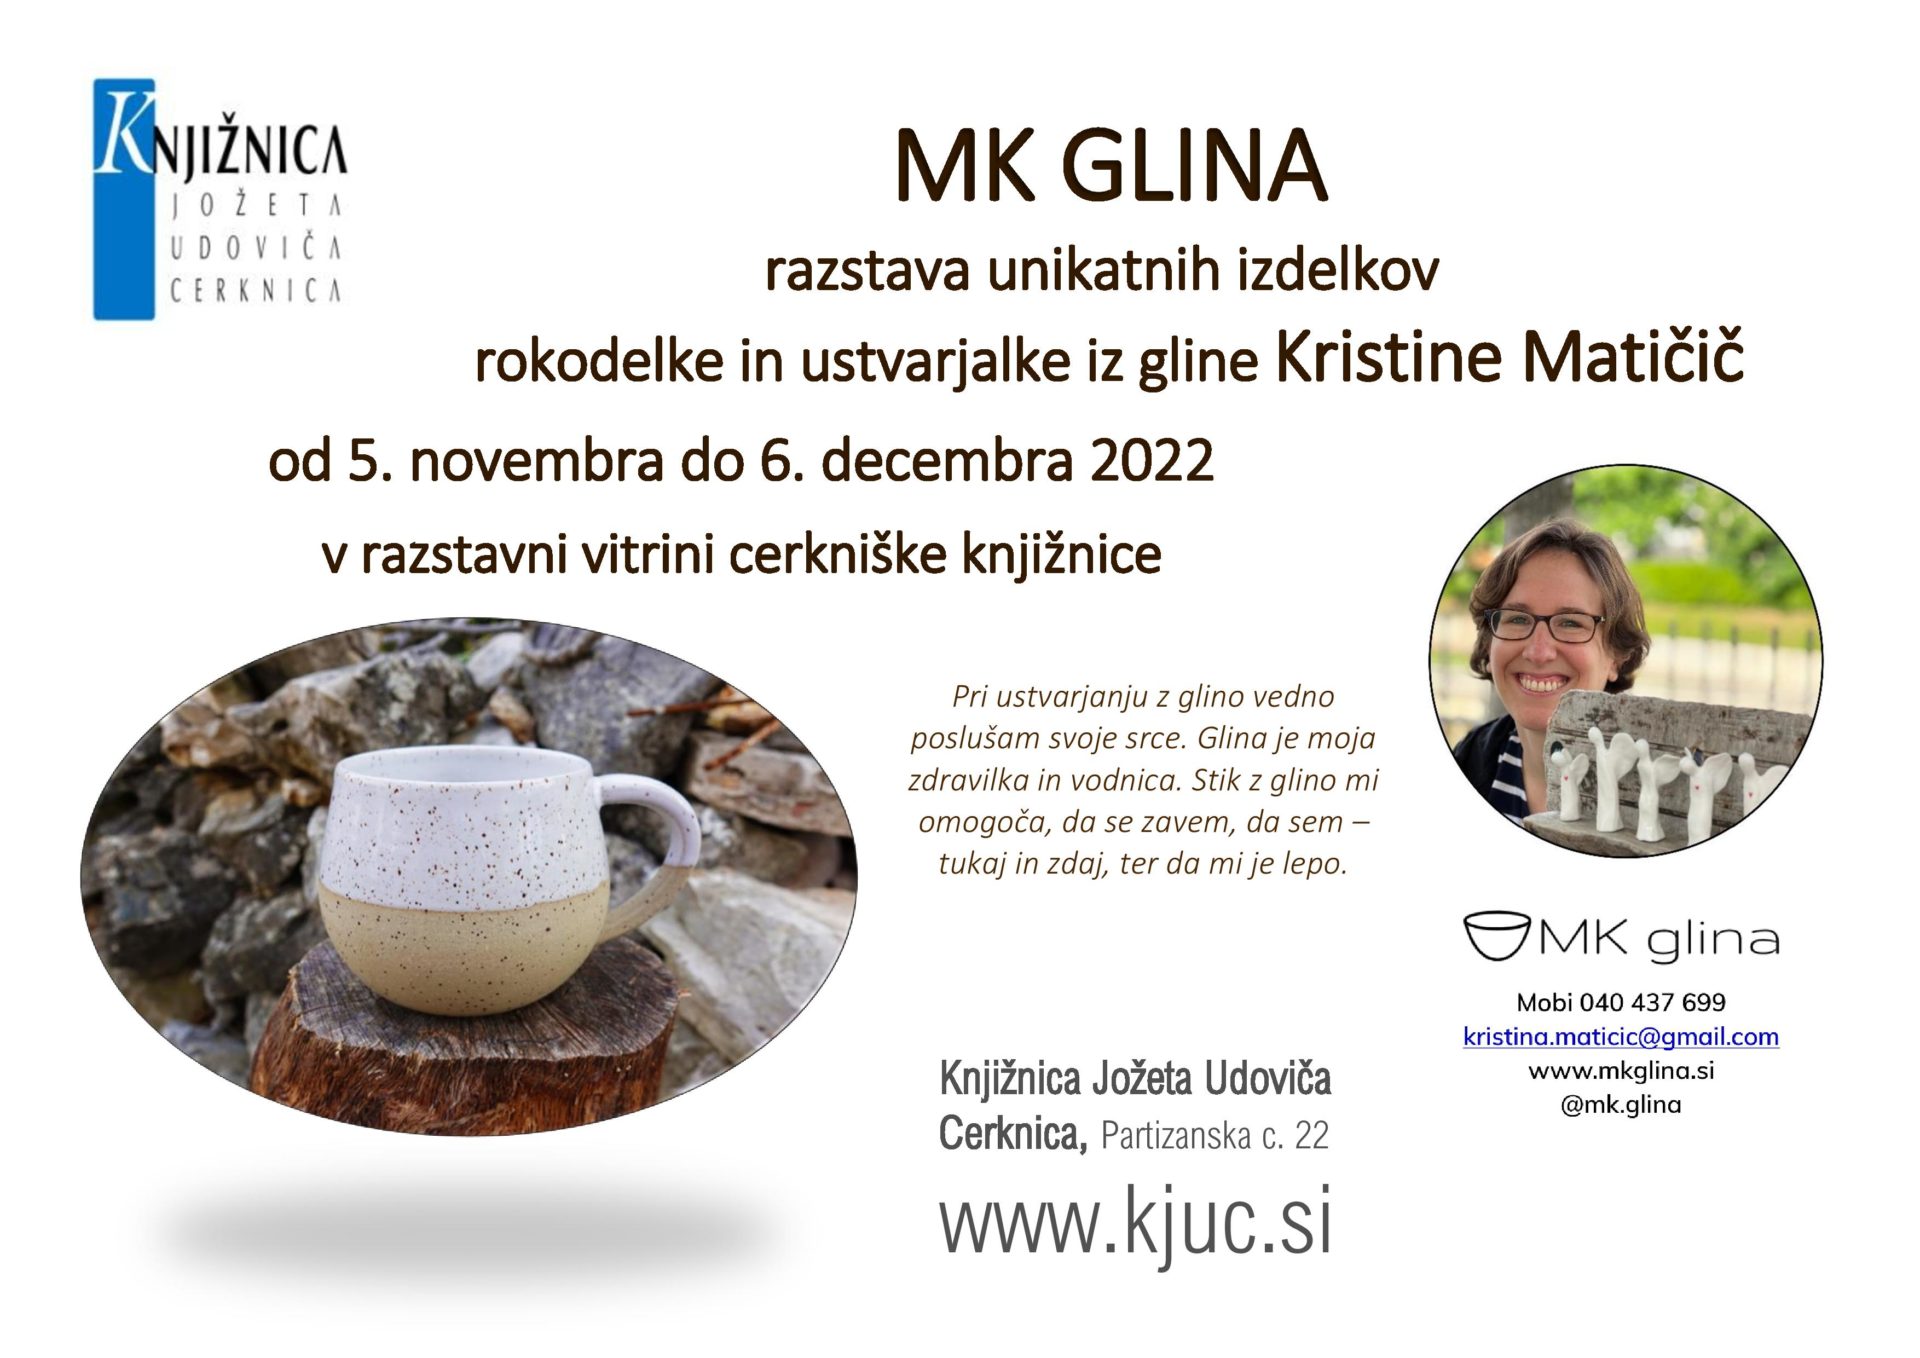 MK GLINA nov dec 2022 page 001 - MK GLINA - razstava unikatnih izdelkov rokodelke in ustvarjalke iz gline Kristine Matičič